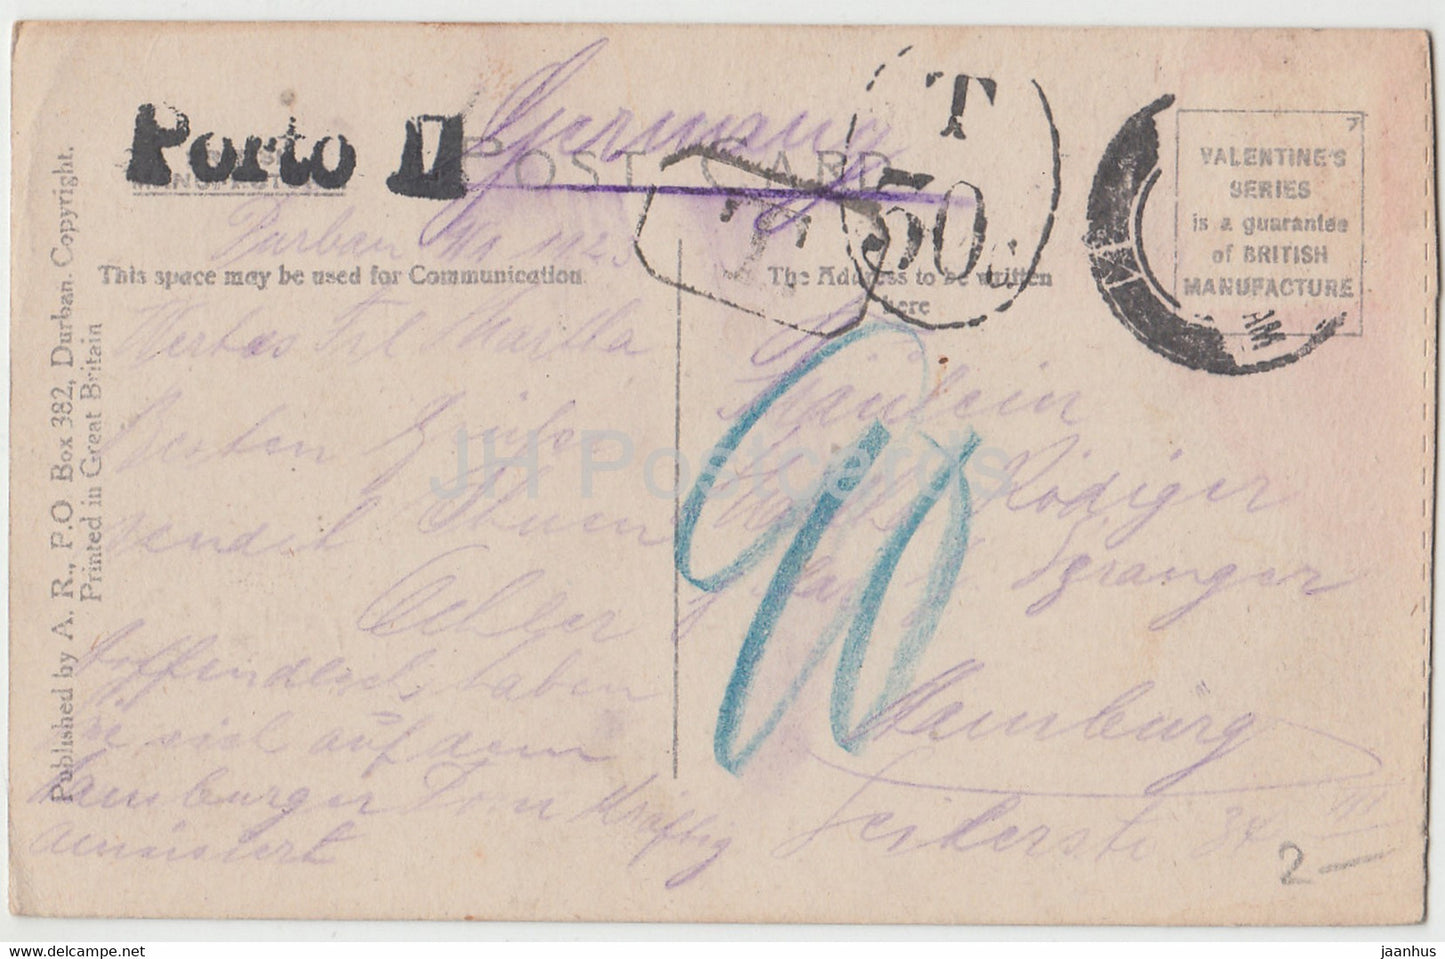 Durban – Gerichtsgebäude – Esplanade – 98554 – alte Postkarte – 1923 – Südafrika – gebraucht